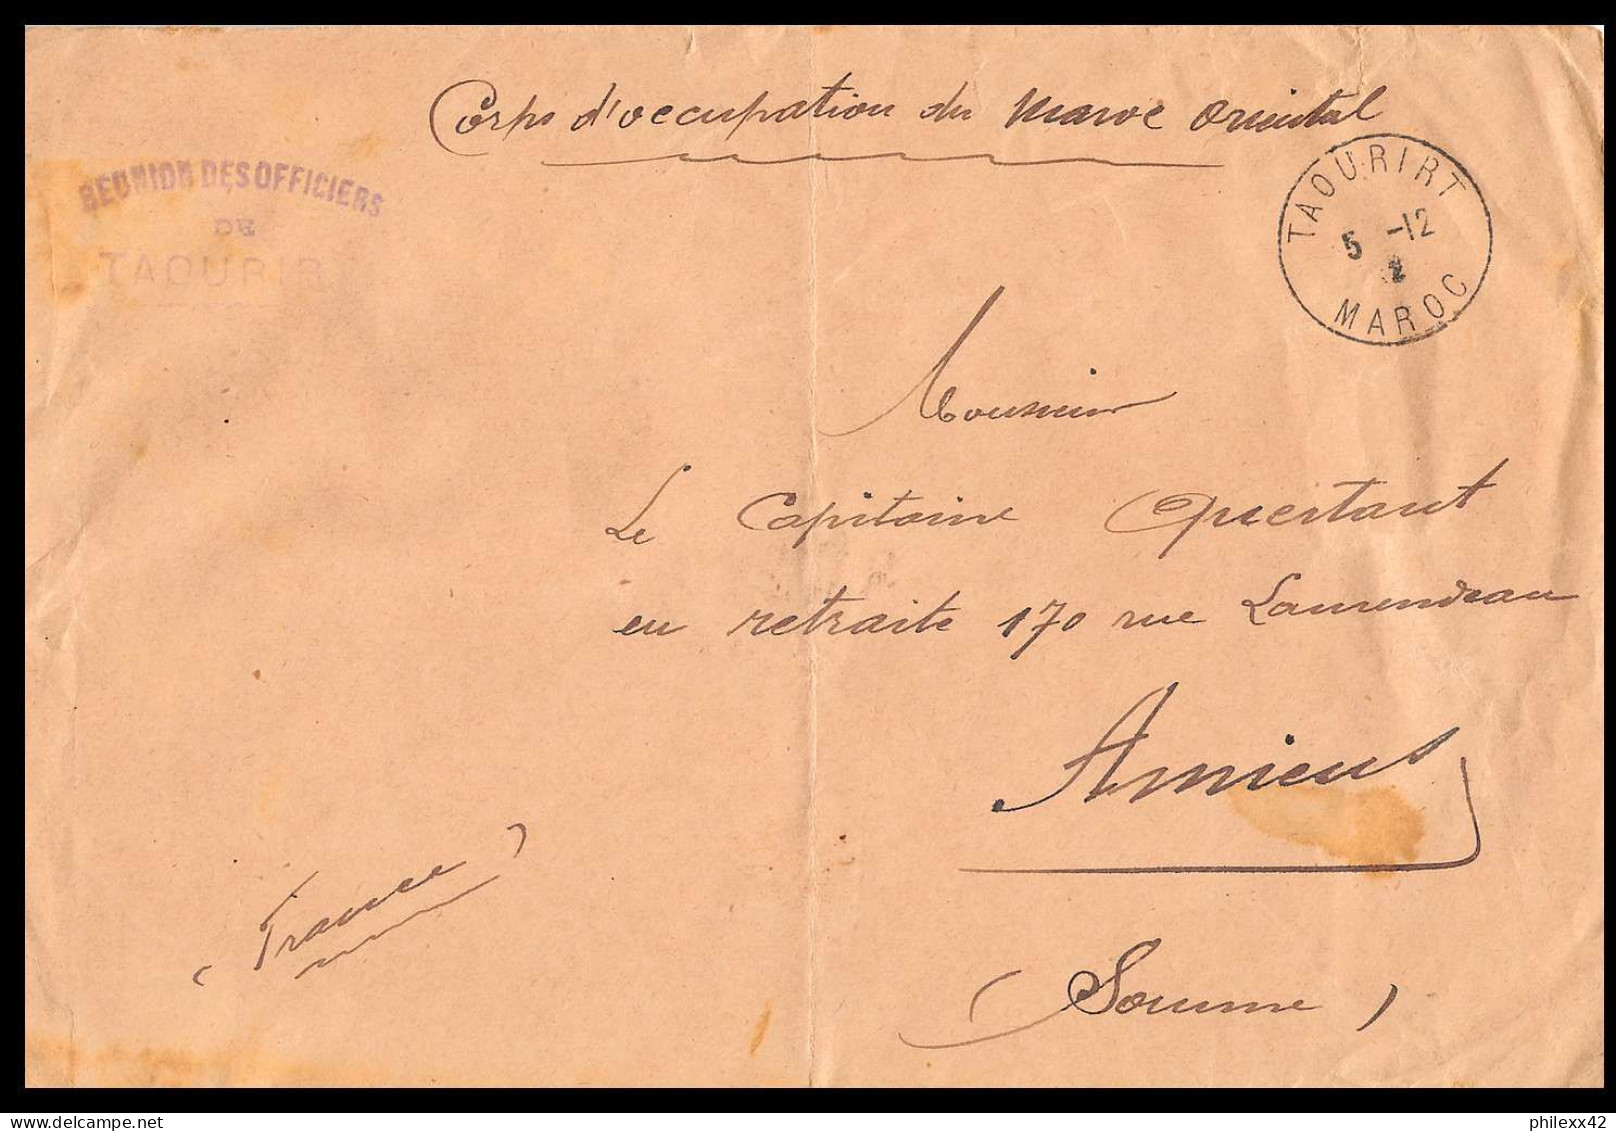 0385 lot 12 lettres Lettre cover occupation du maroc War dont signés